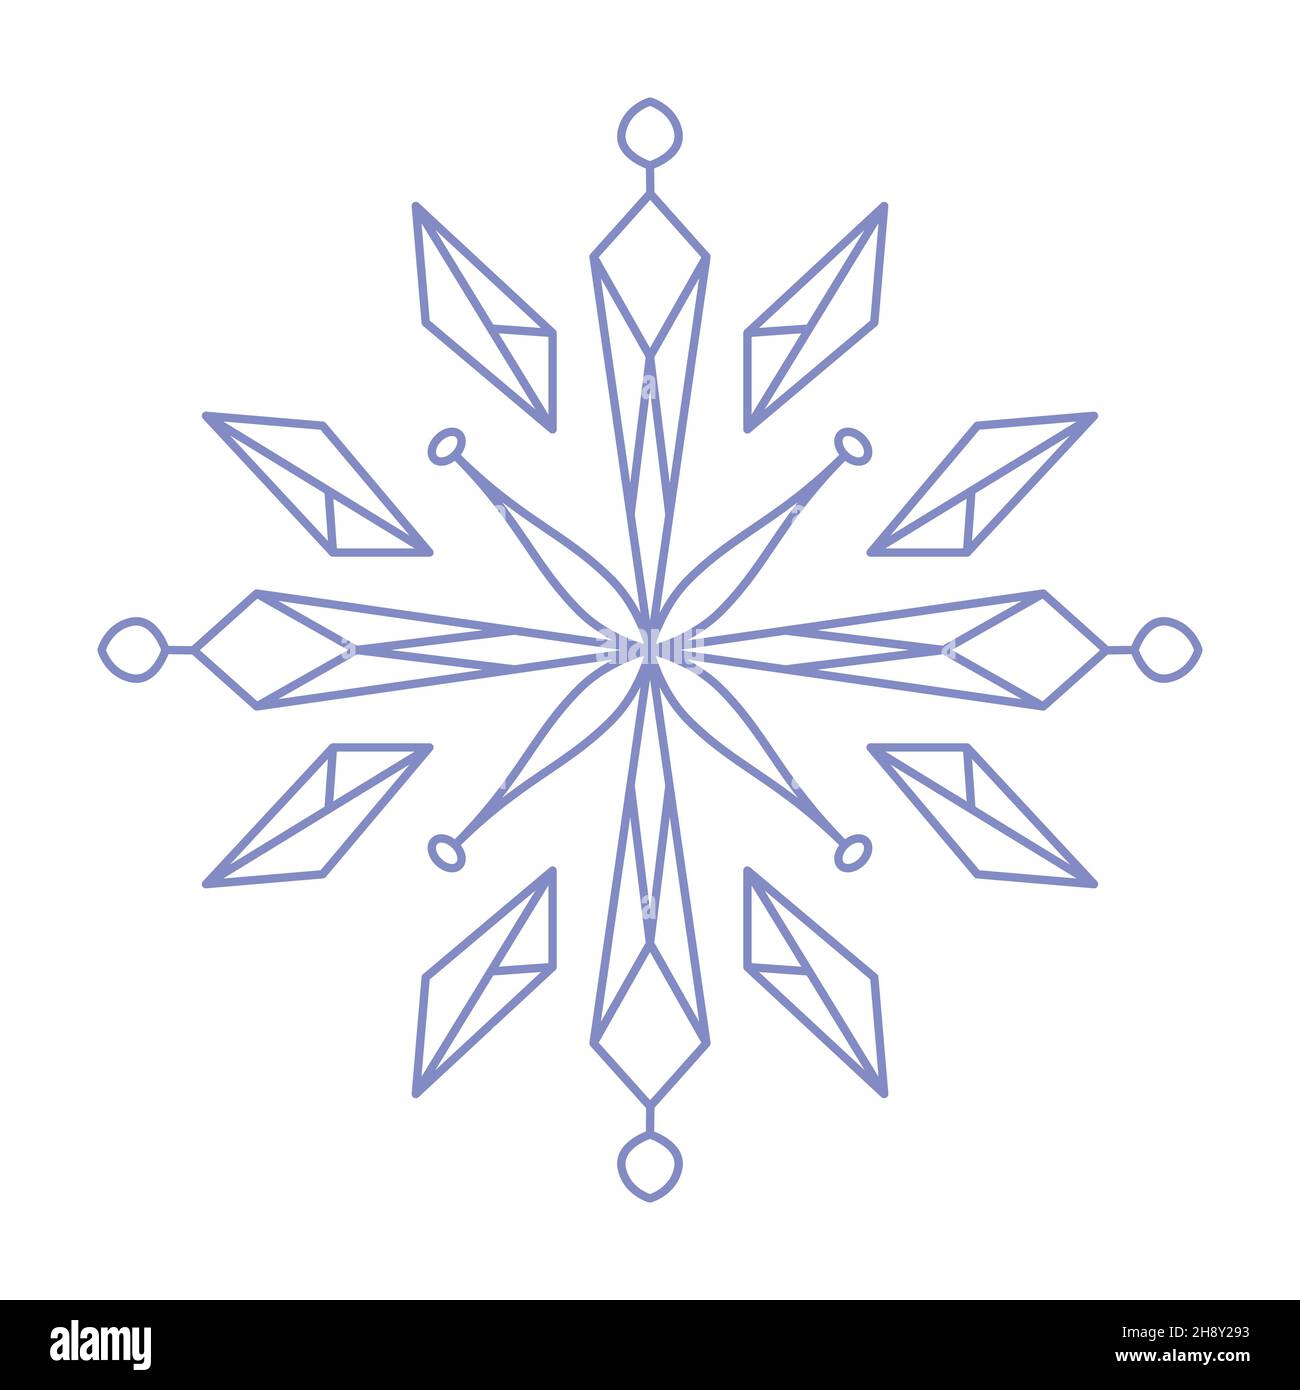 Icona fiocco di neve. Semplice illustrazione di linee vettoriali piatte isolate su sfondo bianco. Silhouette fiocco di neve. Illustrazione Vettoriale